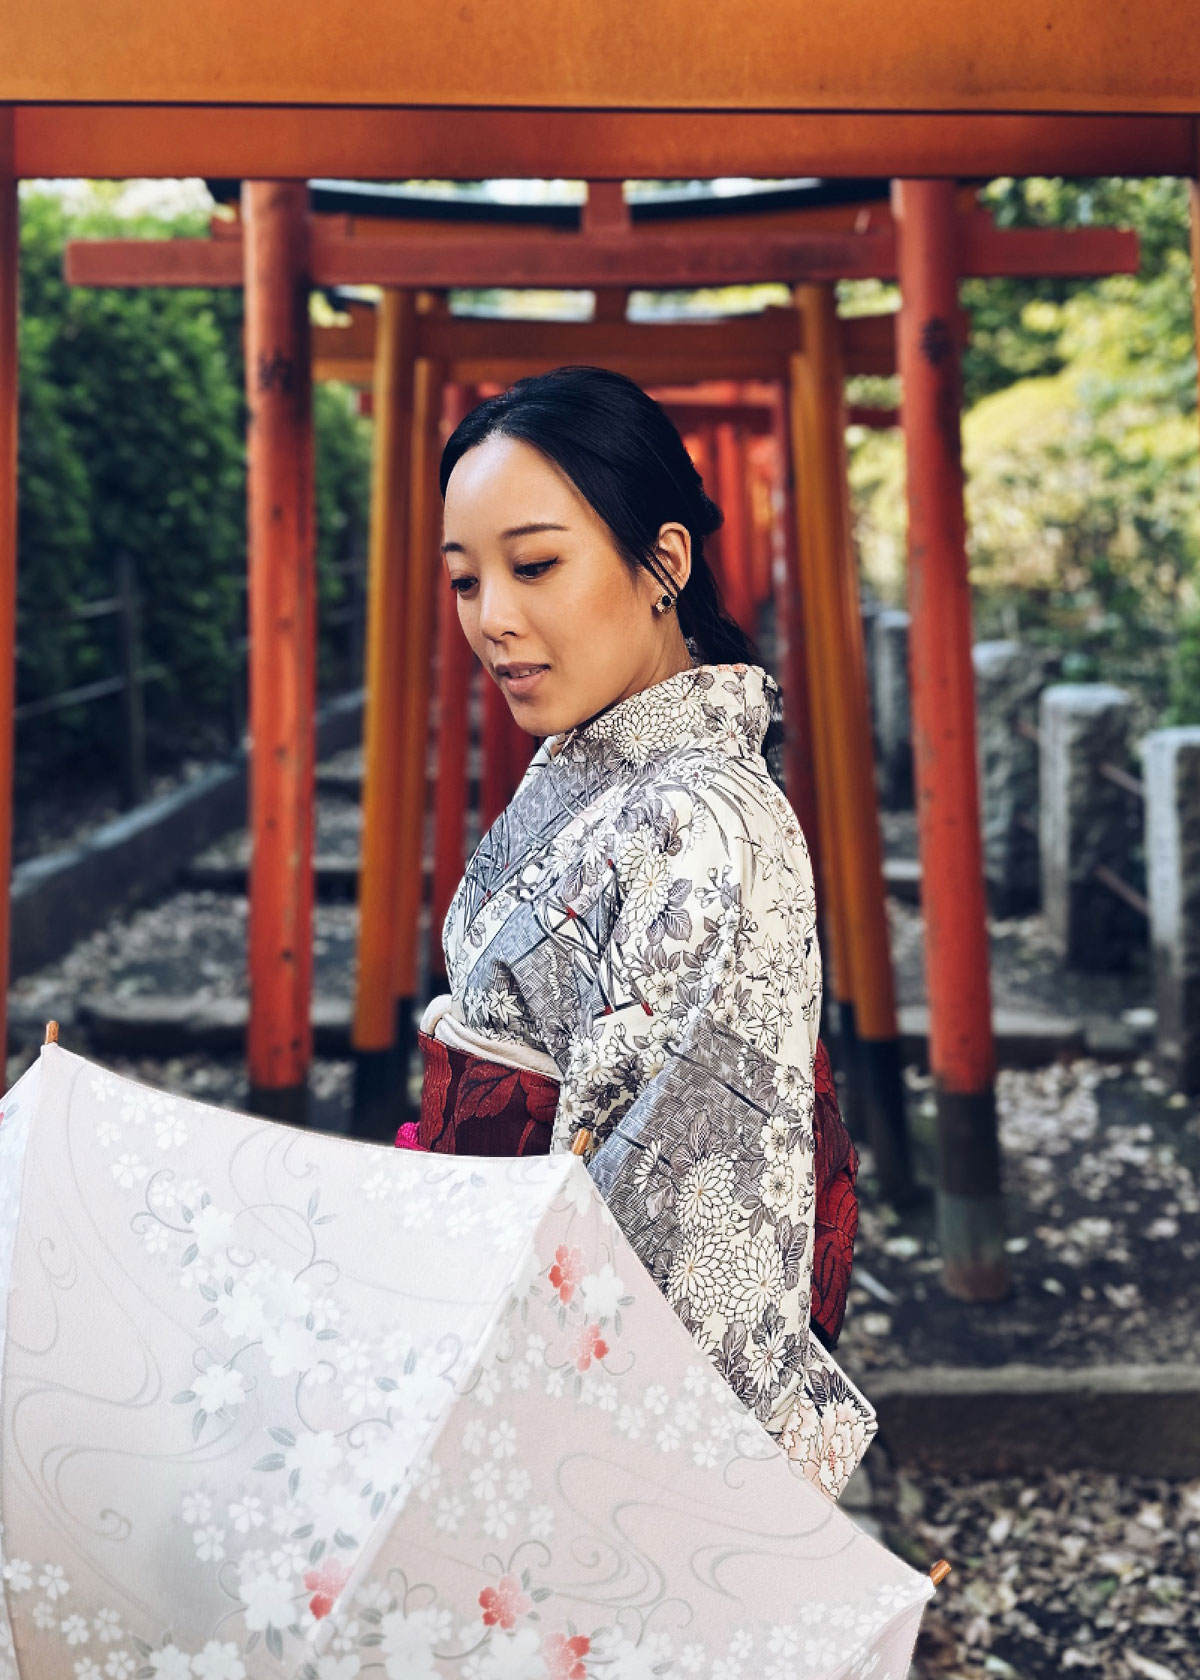 Giang wearing a kimono